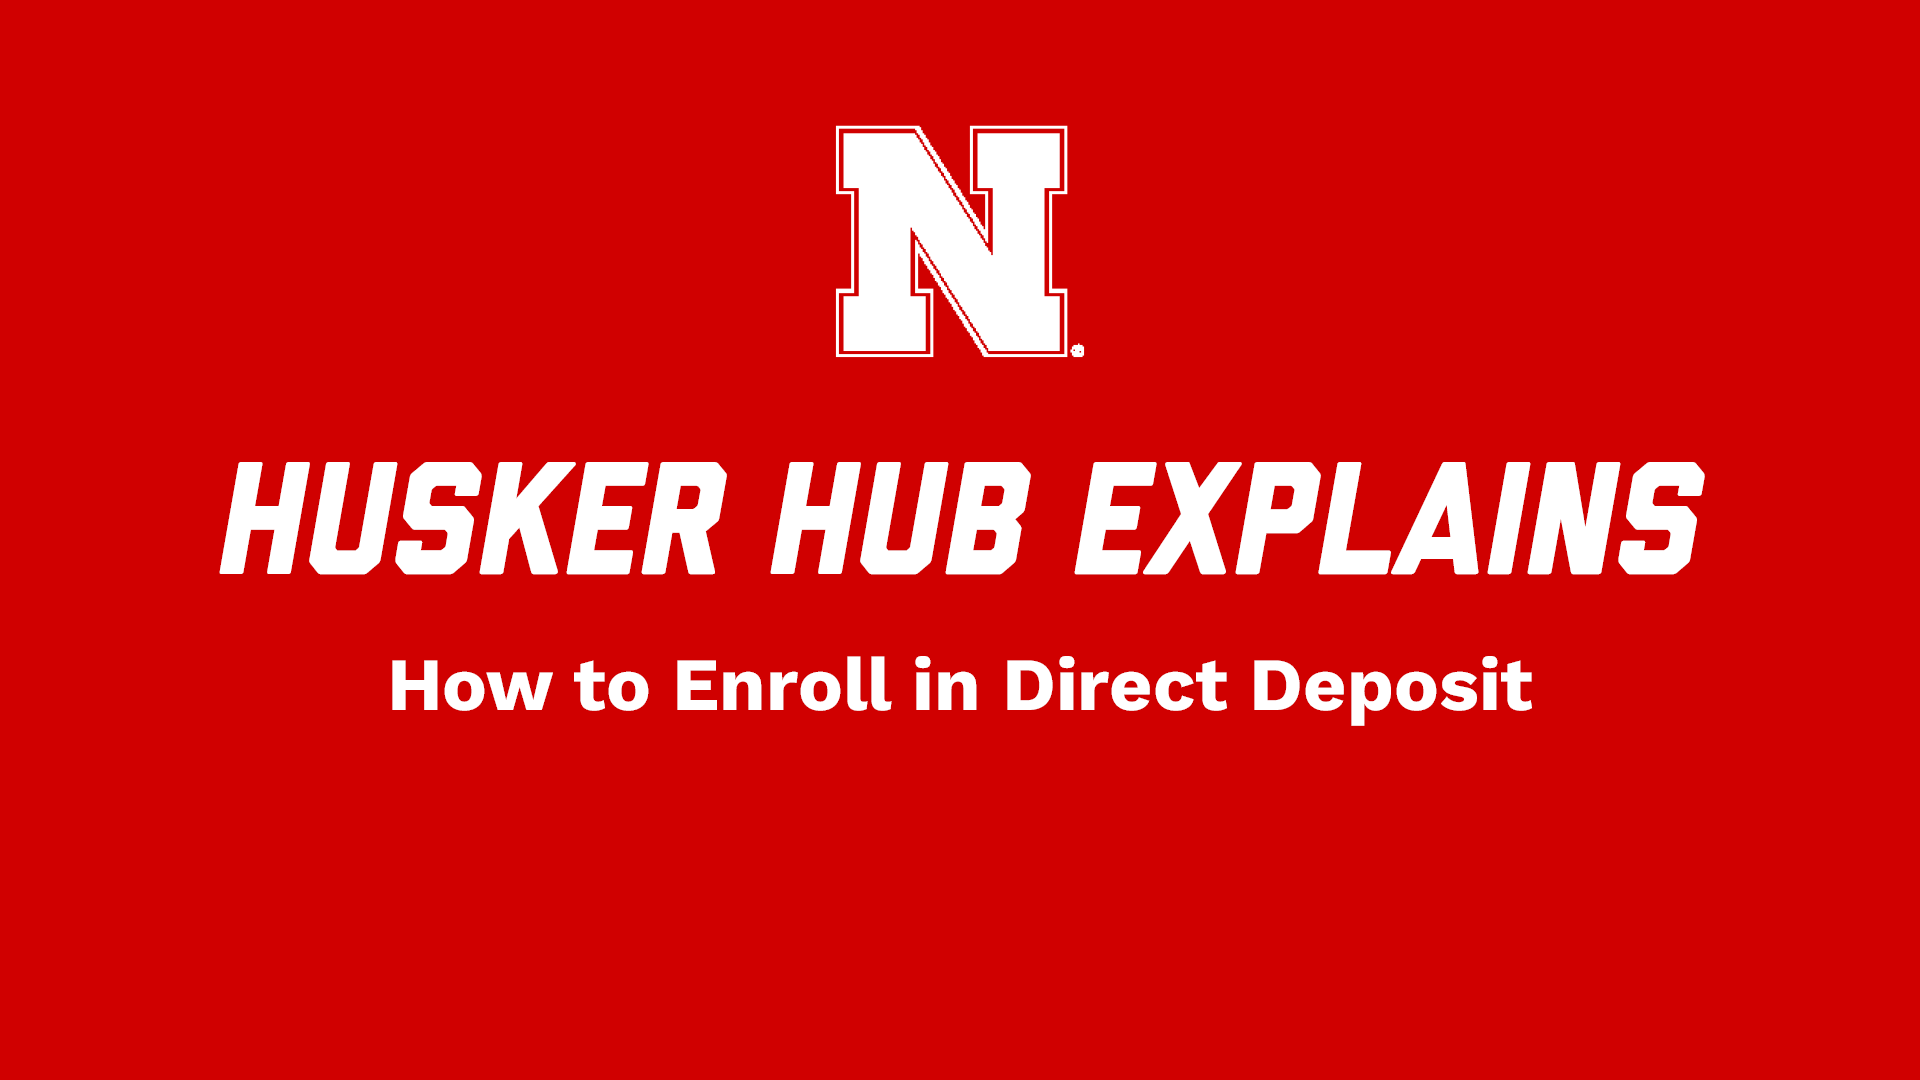 Husker Hub Explains: How to Enroll in Direct Deposit